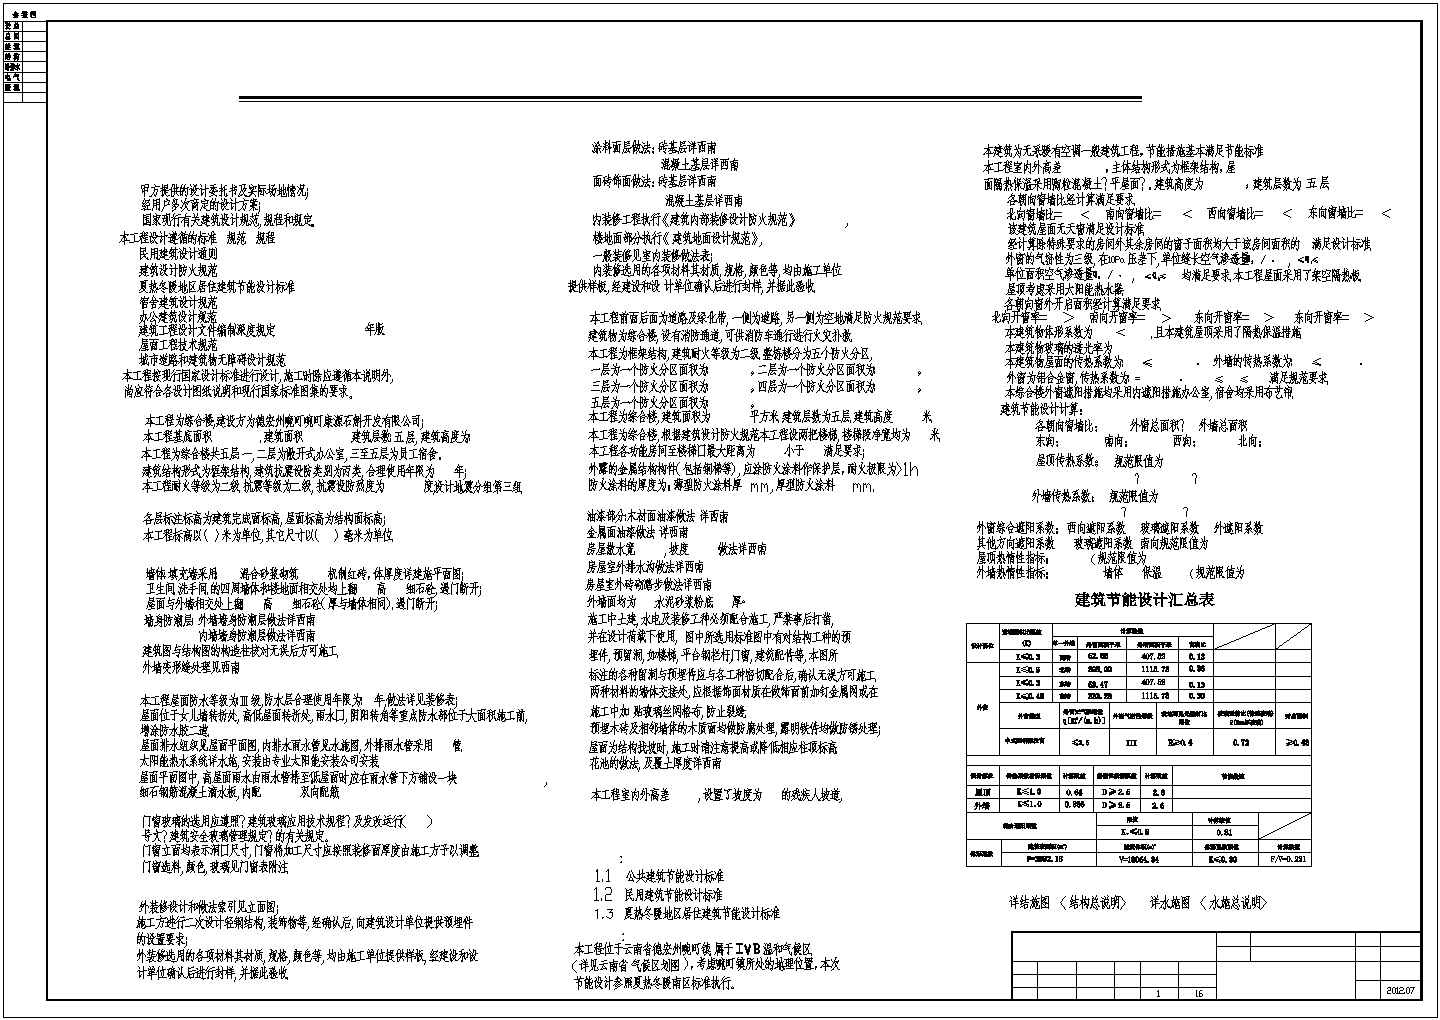 福建泉州新一代天气雷达系统紫帽山雷达站施工图